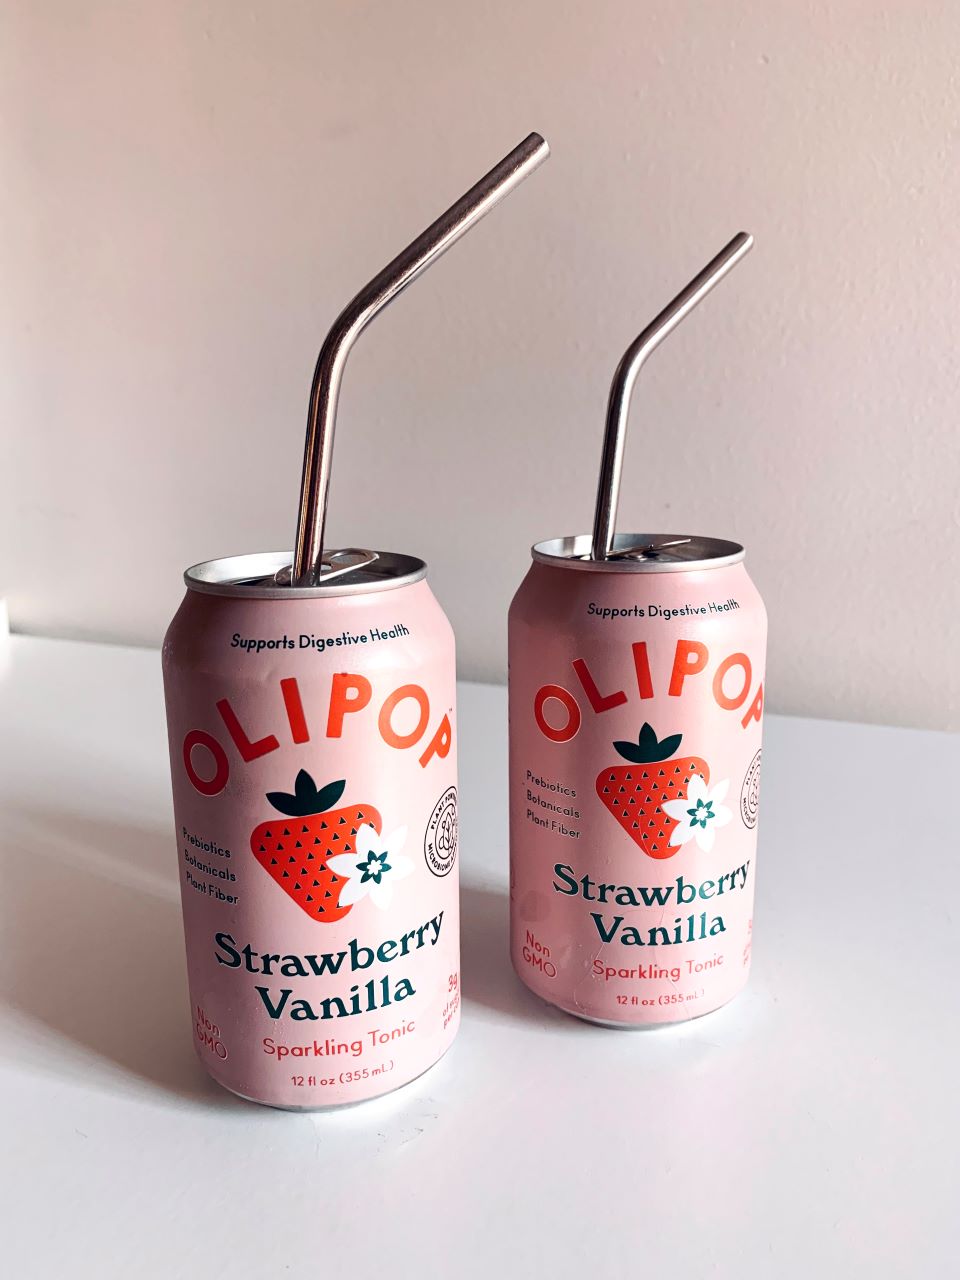 Olipop Strawberry Vanilla Soda: